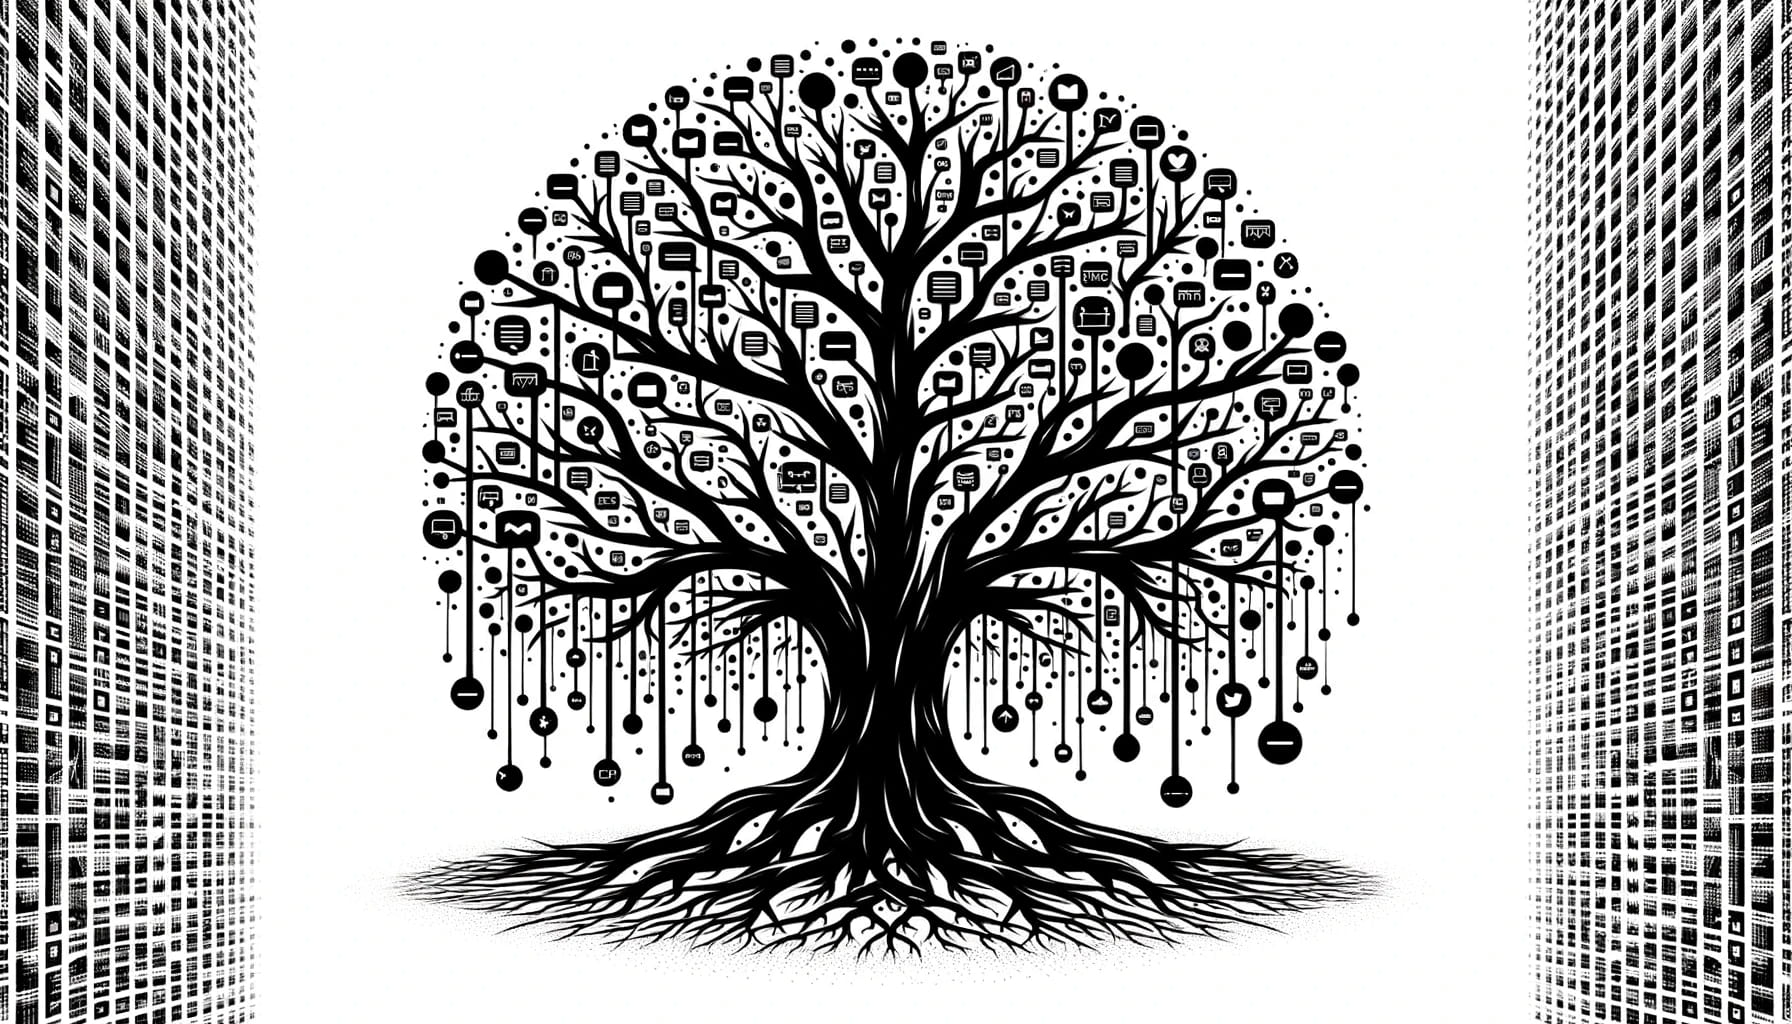 Illustration eines Baumes, der Deep Links symbolisiert, mit Verbindungen, die wie Wurzeln in die digitale Welt hineinwachsen